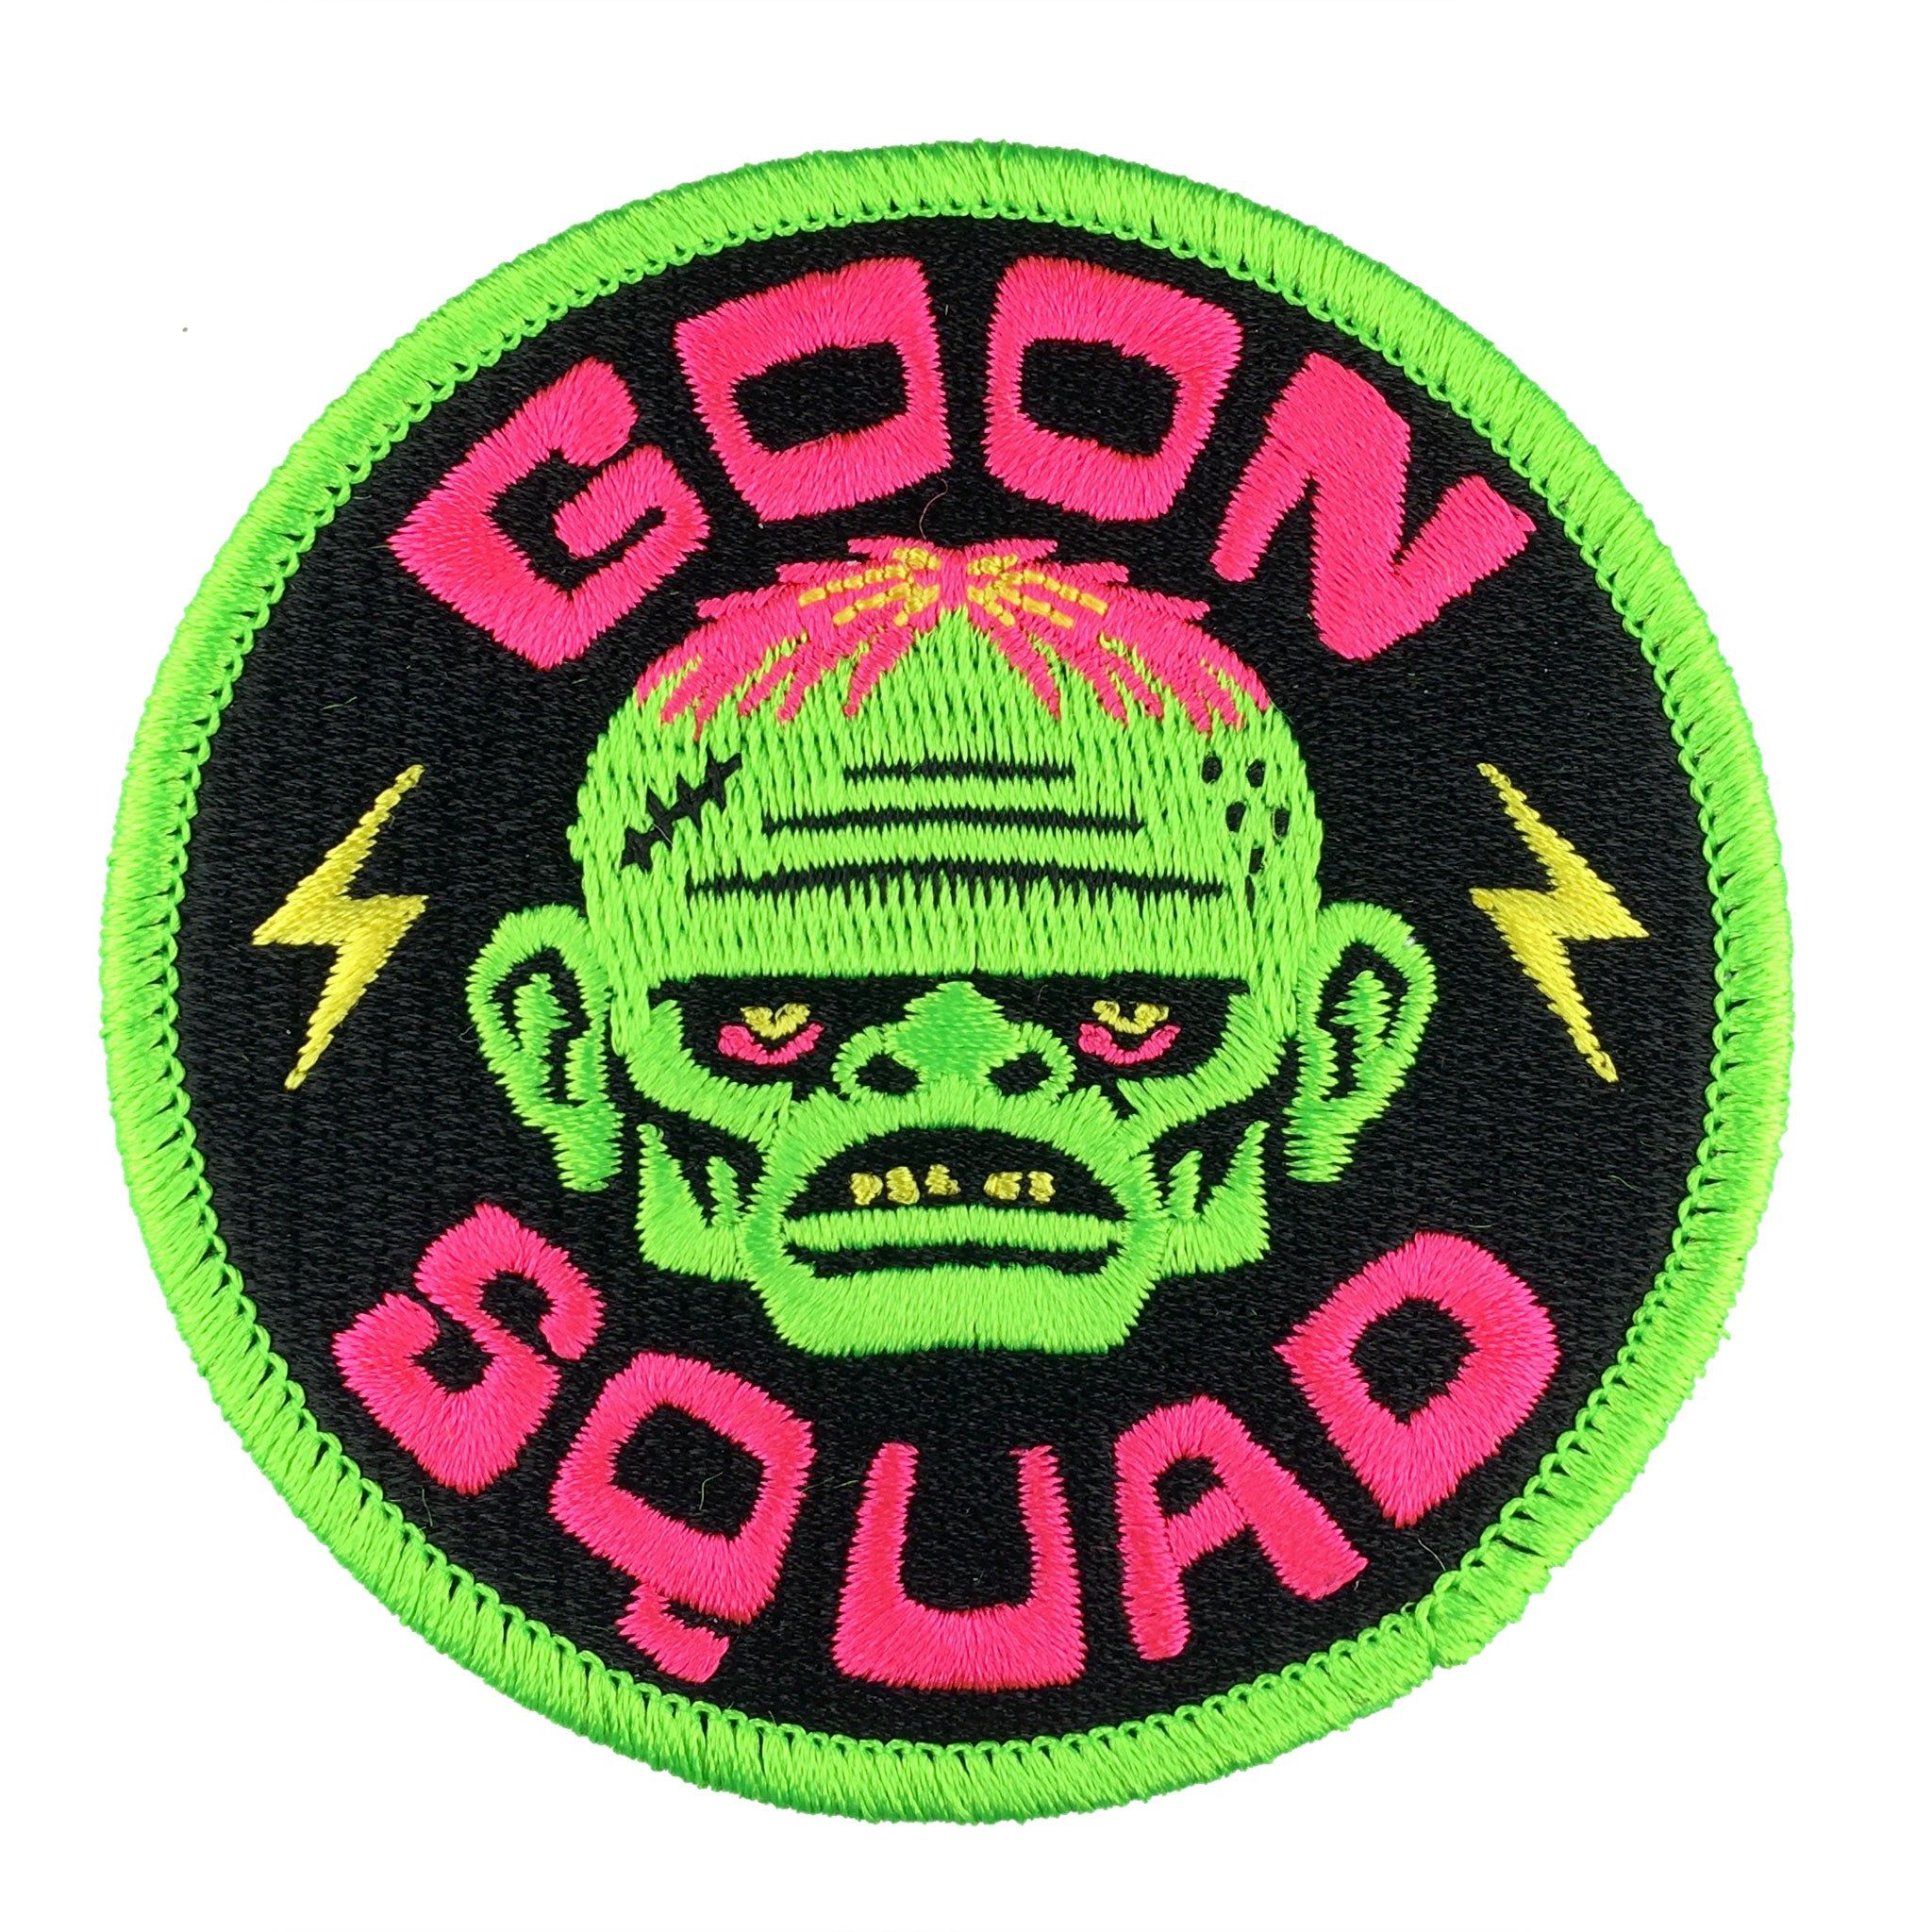 goon squad or die